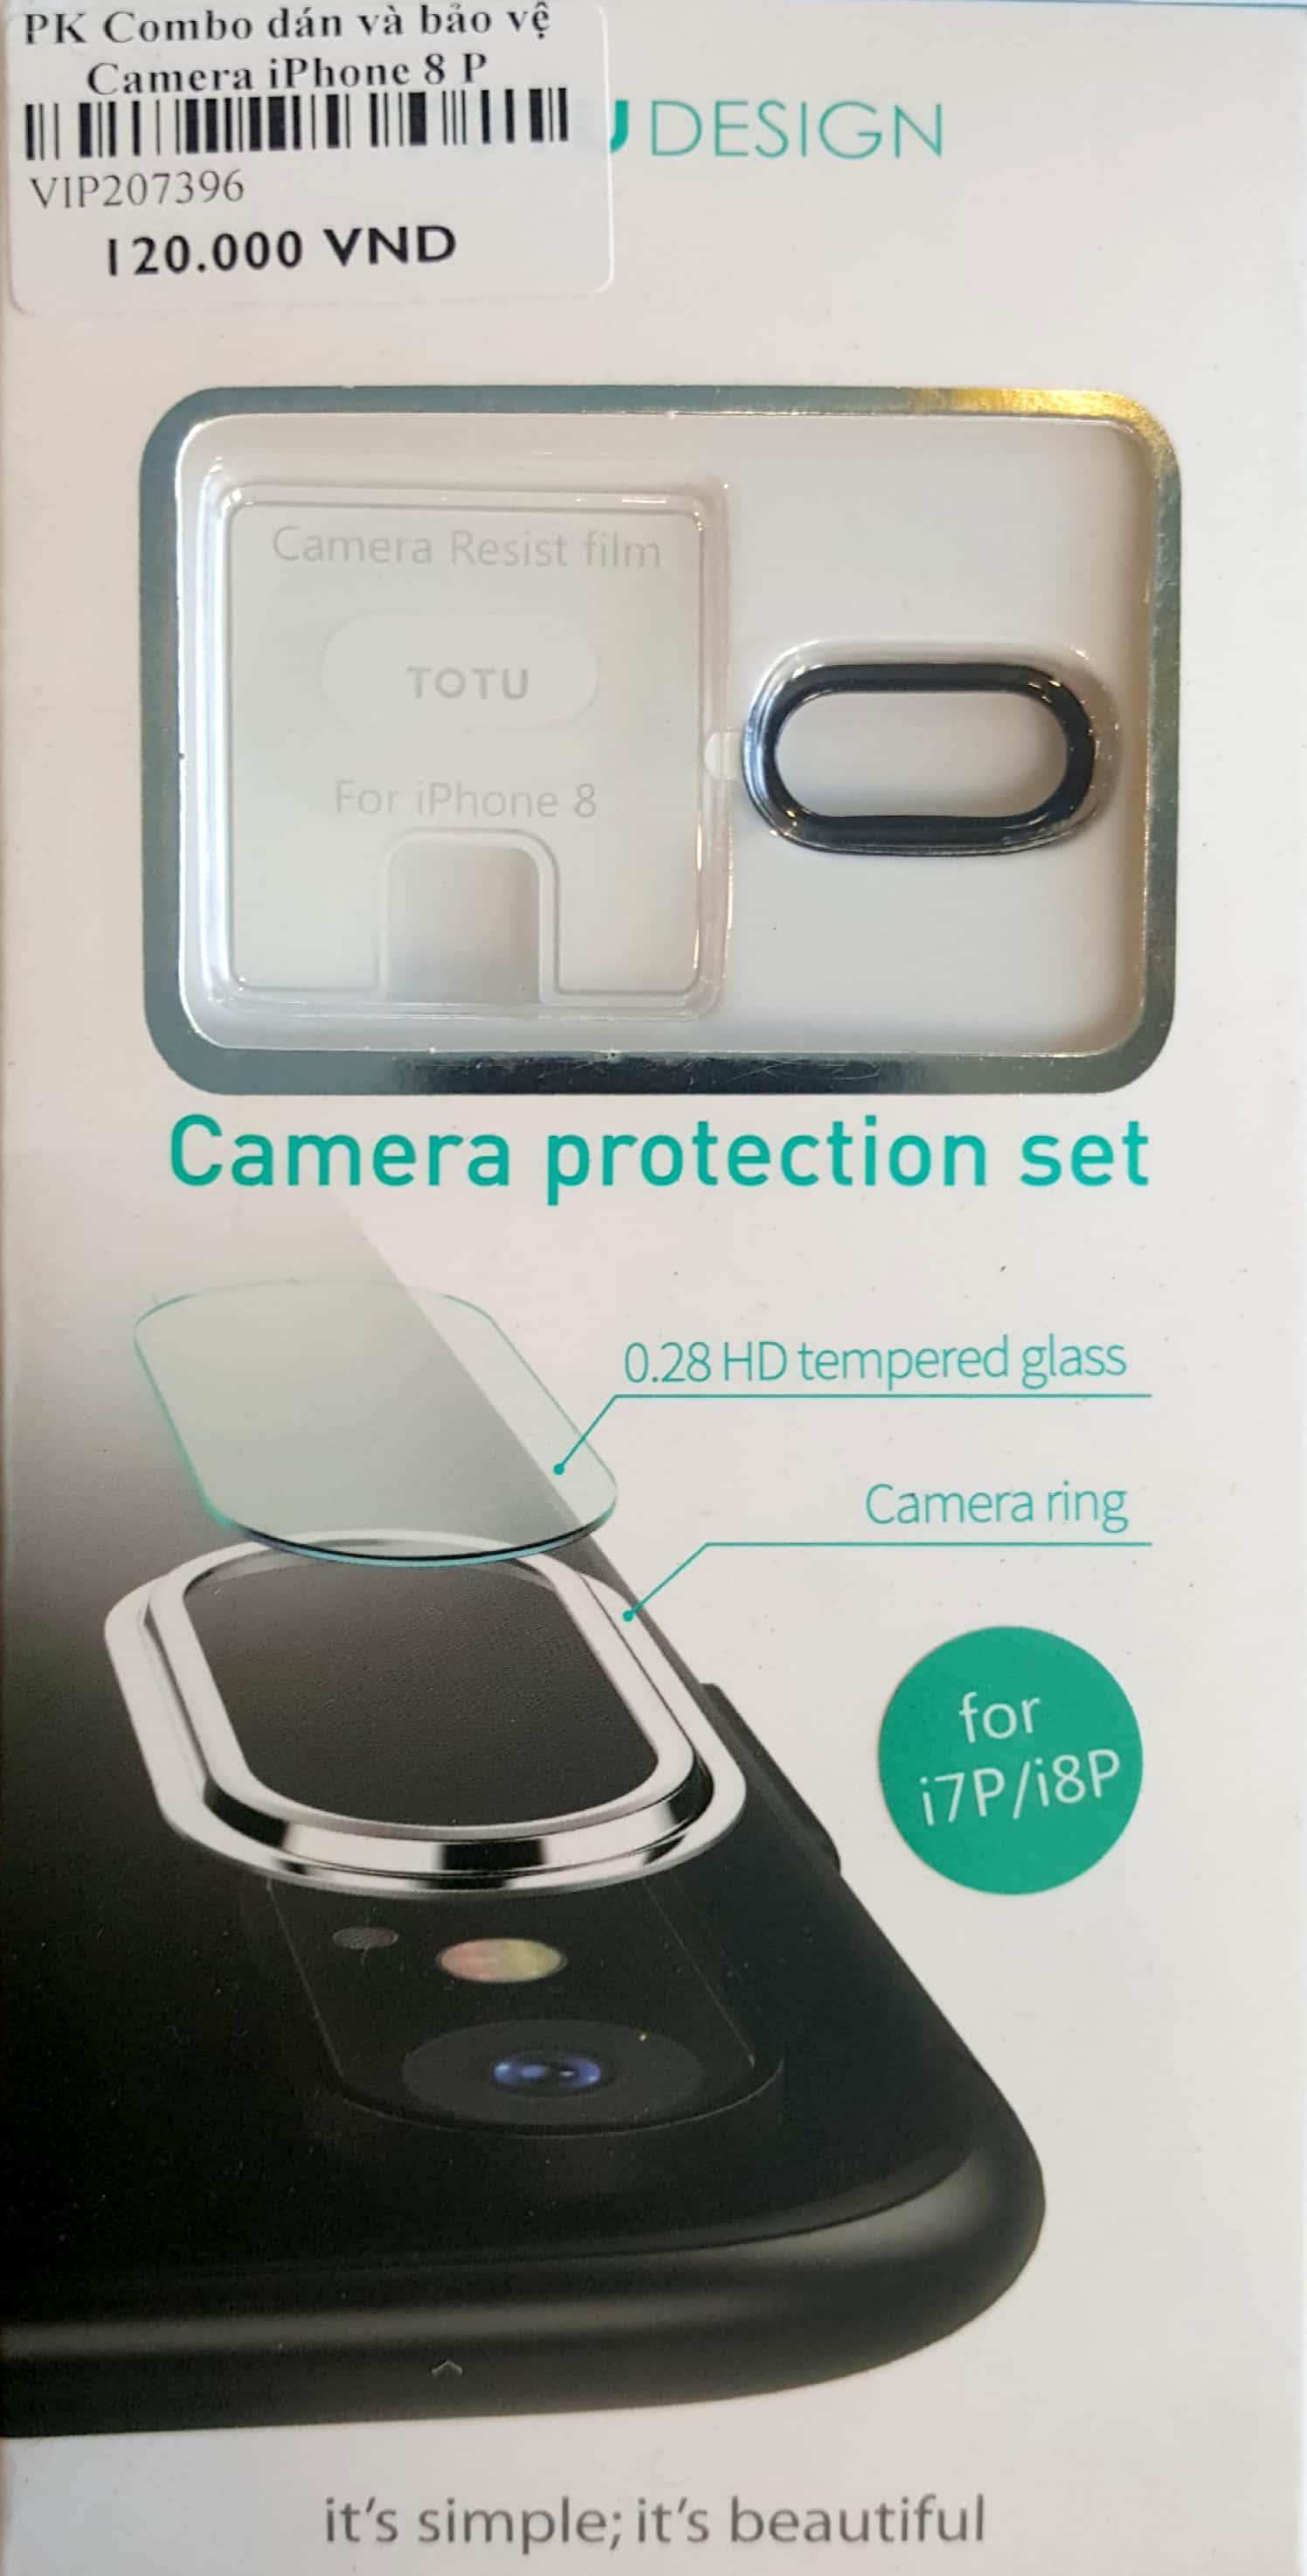 PK Combo dán và bảo vệ Camera iPhone 8 Plus Totu